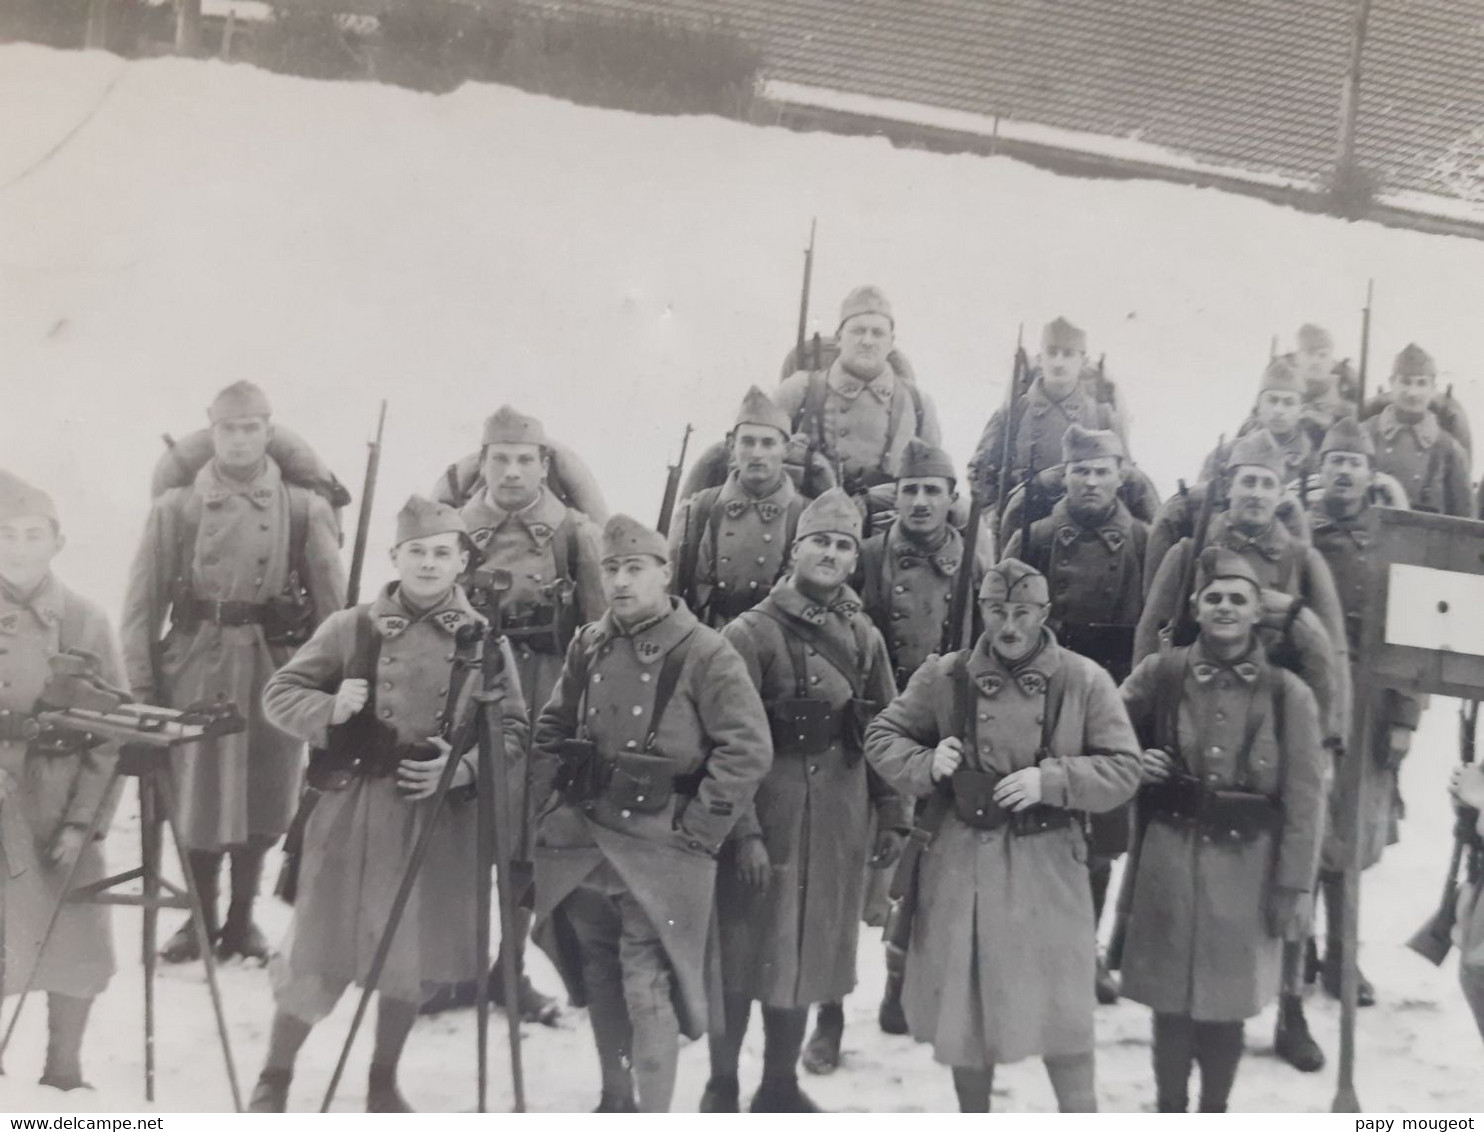 150ème Régiment D'Infanterie (1er & 2ème Bataillon) - Diez (Rhénanie) 03-12-1925 - Krieg, Militär